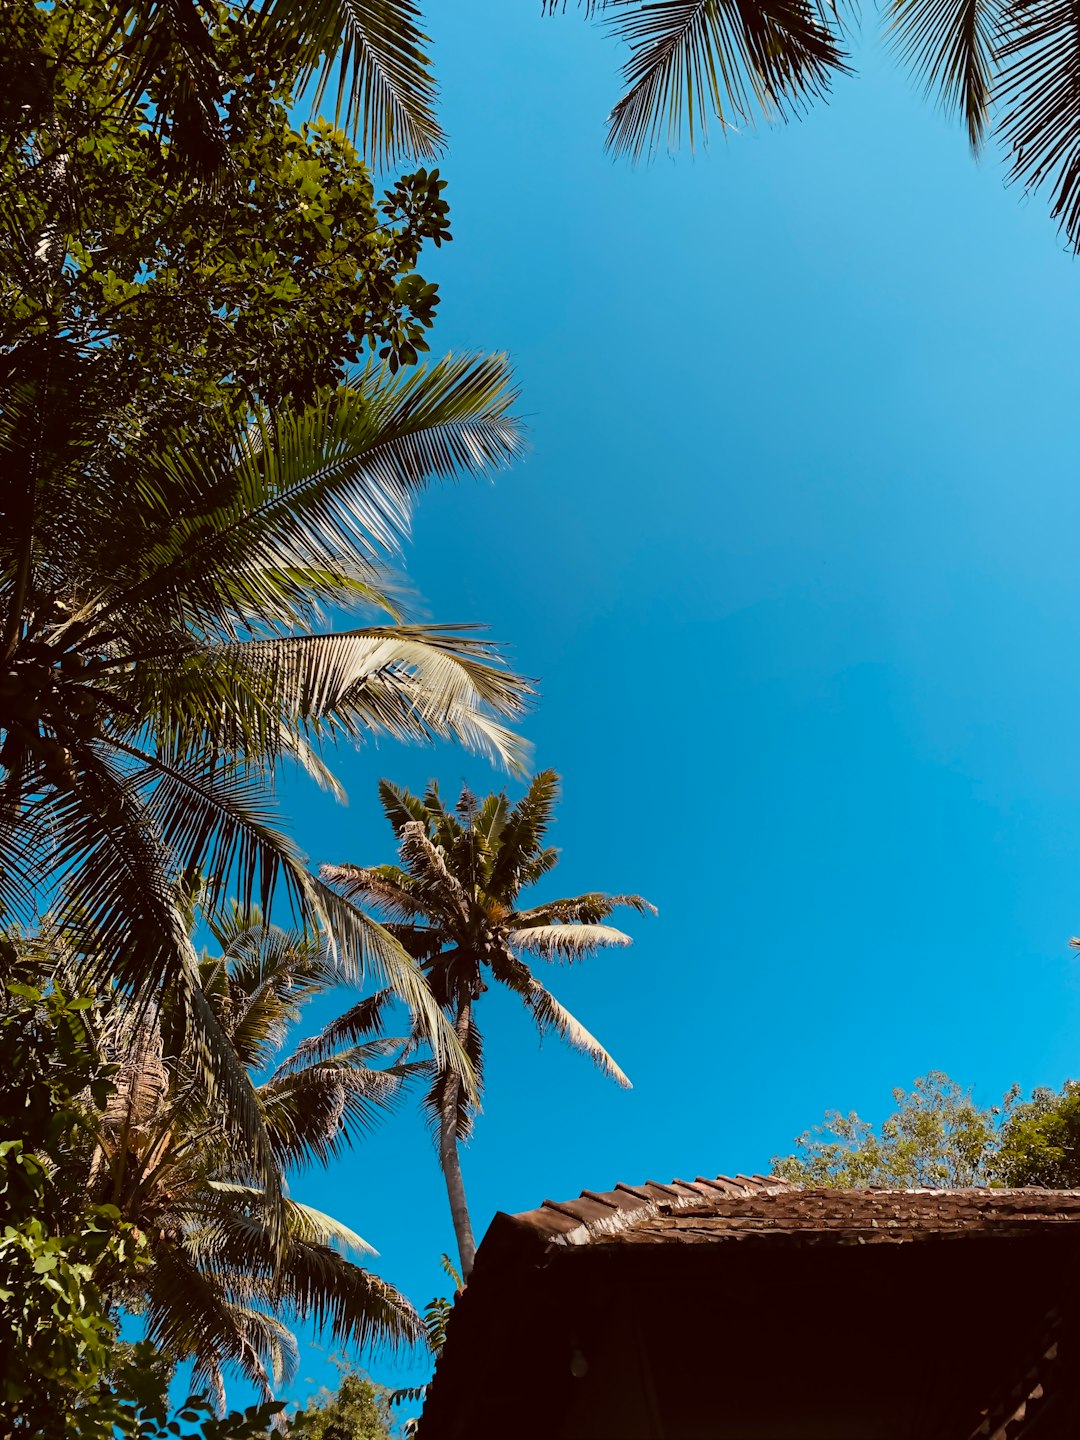 Tropics photo spot Kottamala Kollam